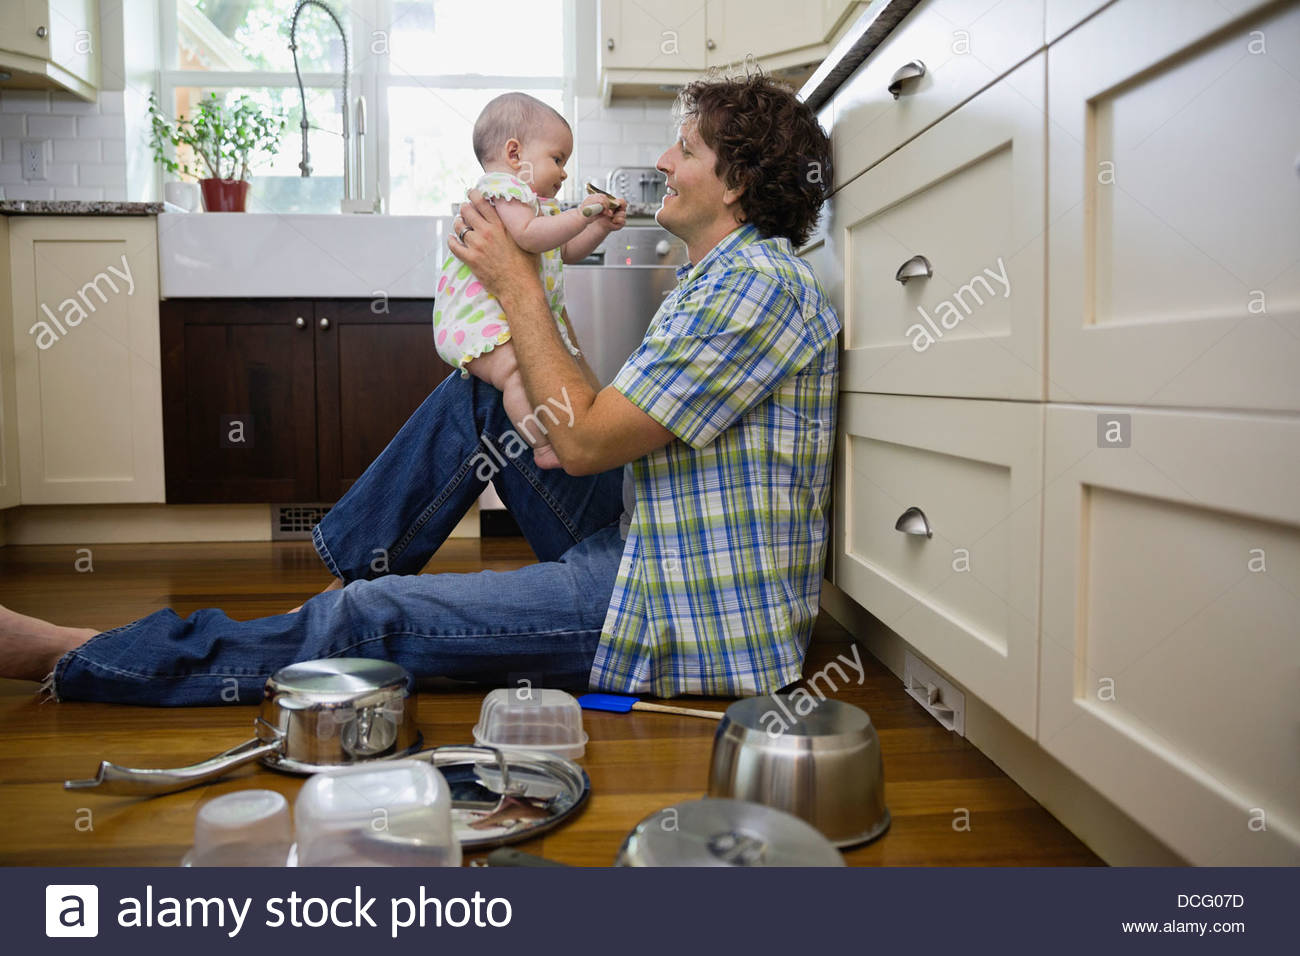 Profil-Bild von Vater und Baby Mädchen in der Küche Stockfoto